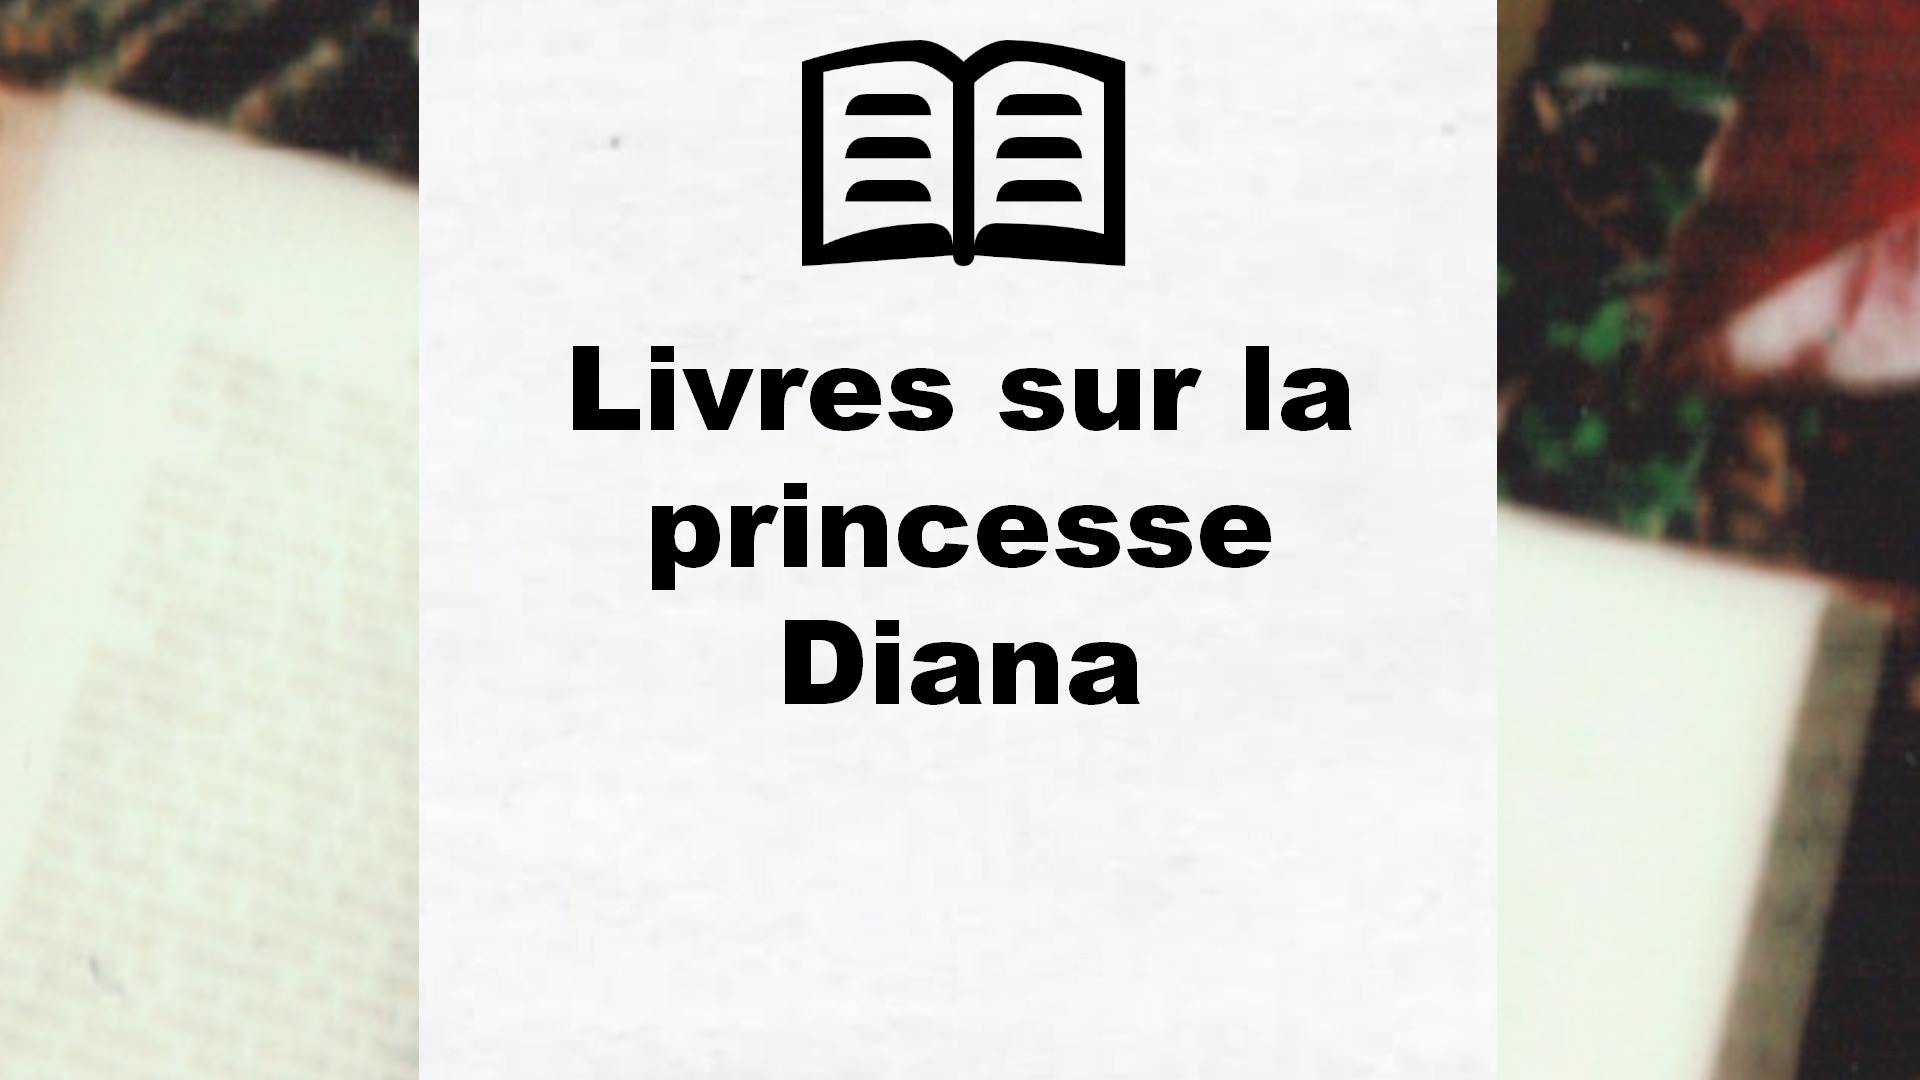 Livres sur la princesse Diana